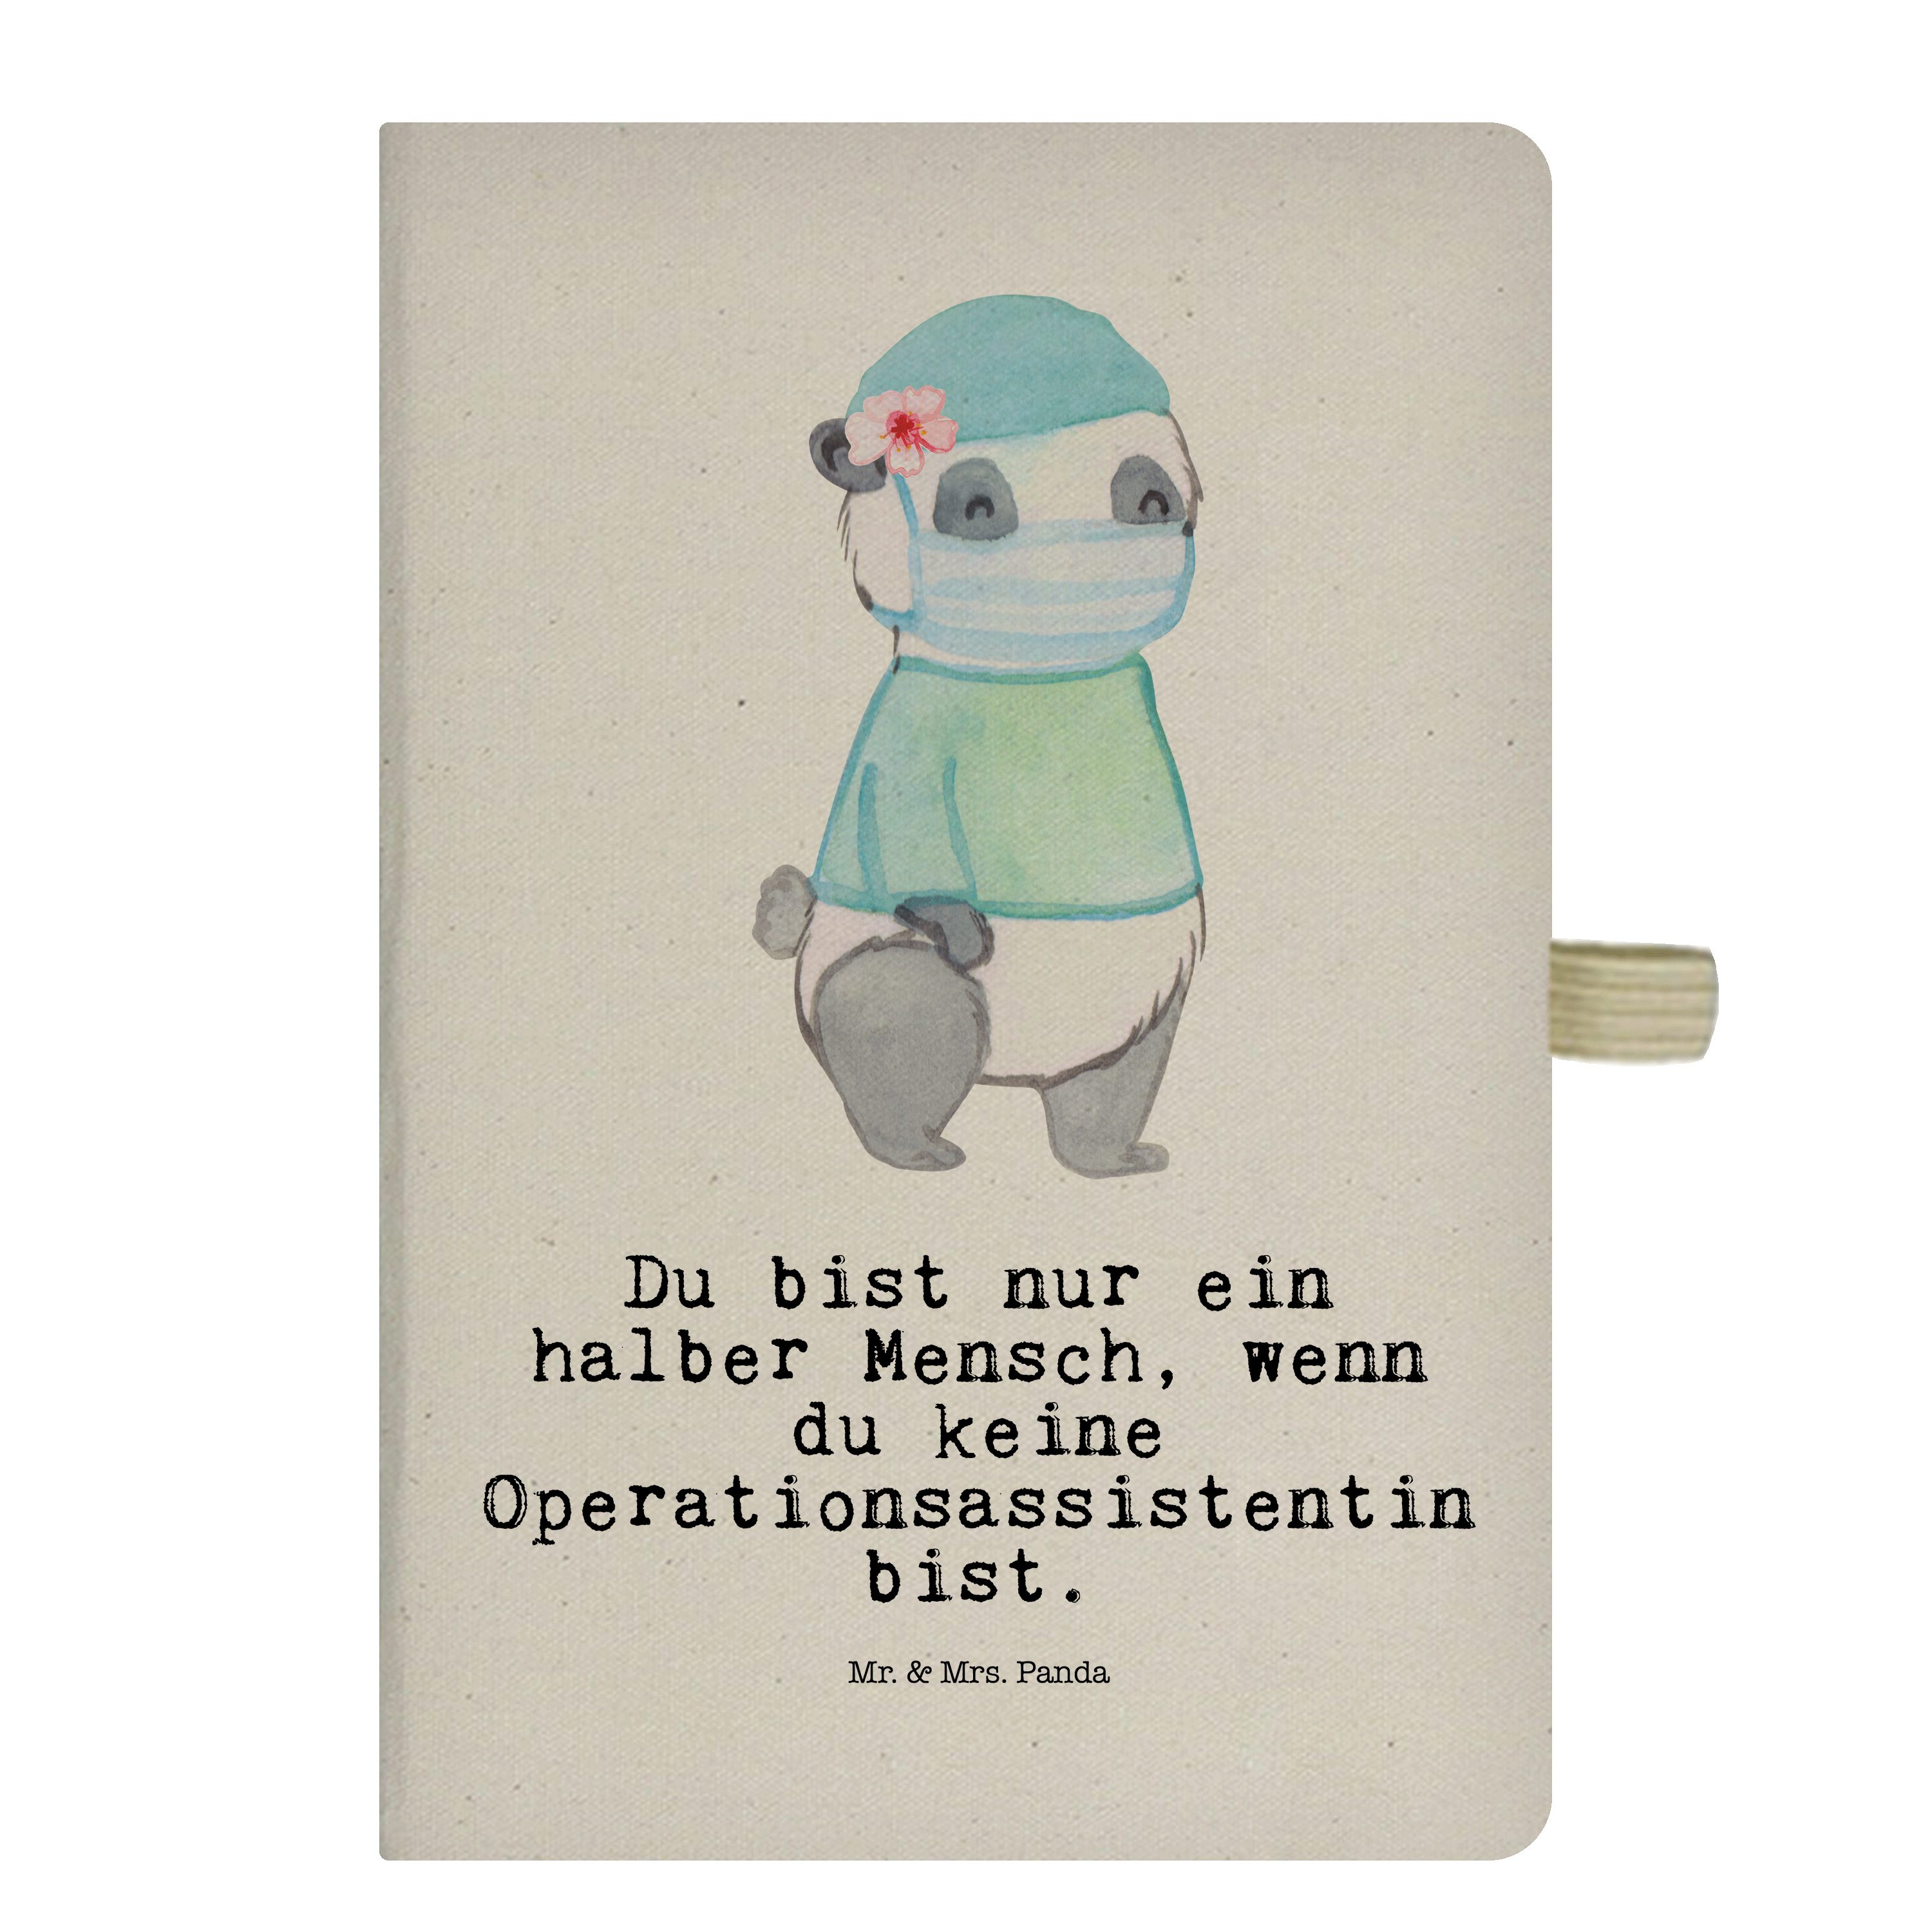 Mr. & Mrs. Panda Notizbuch Operationsassistentin mit Herz - Transparent - Geschenk, Dankeschön, Mr. & Mrs. Panda